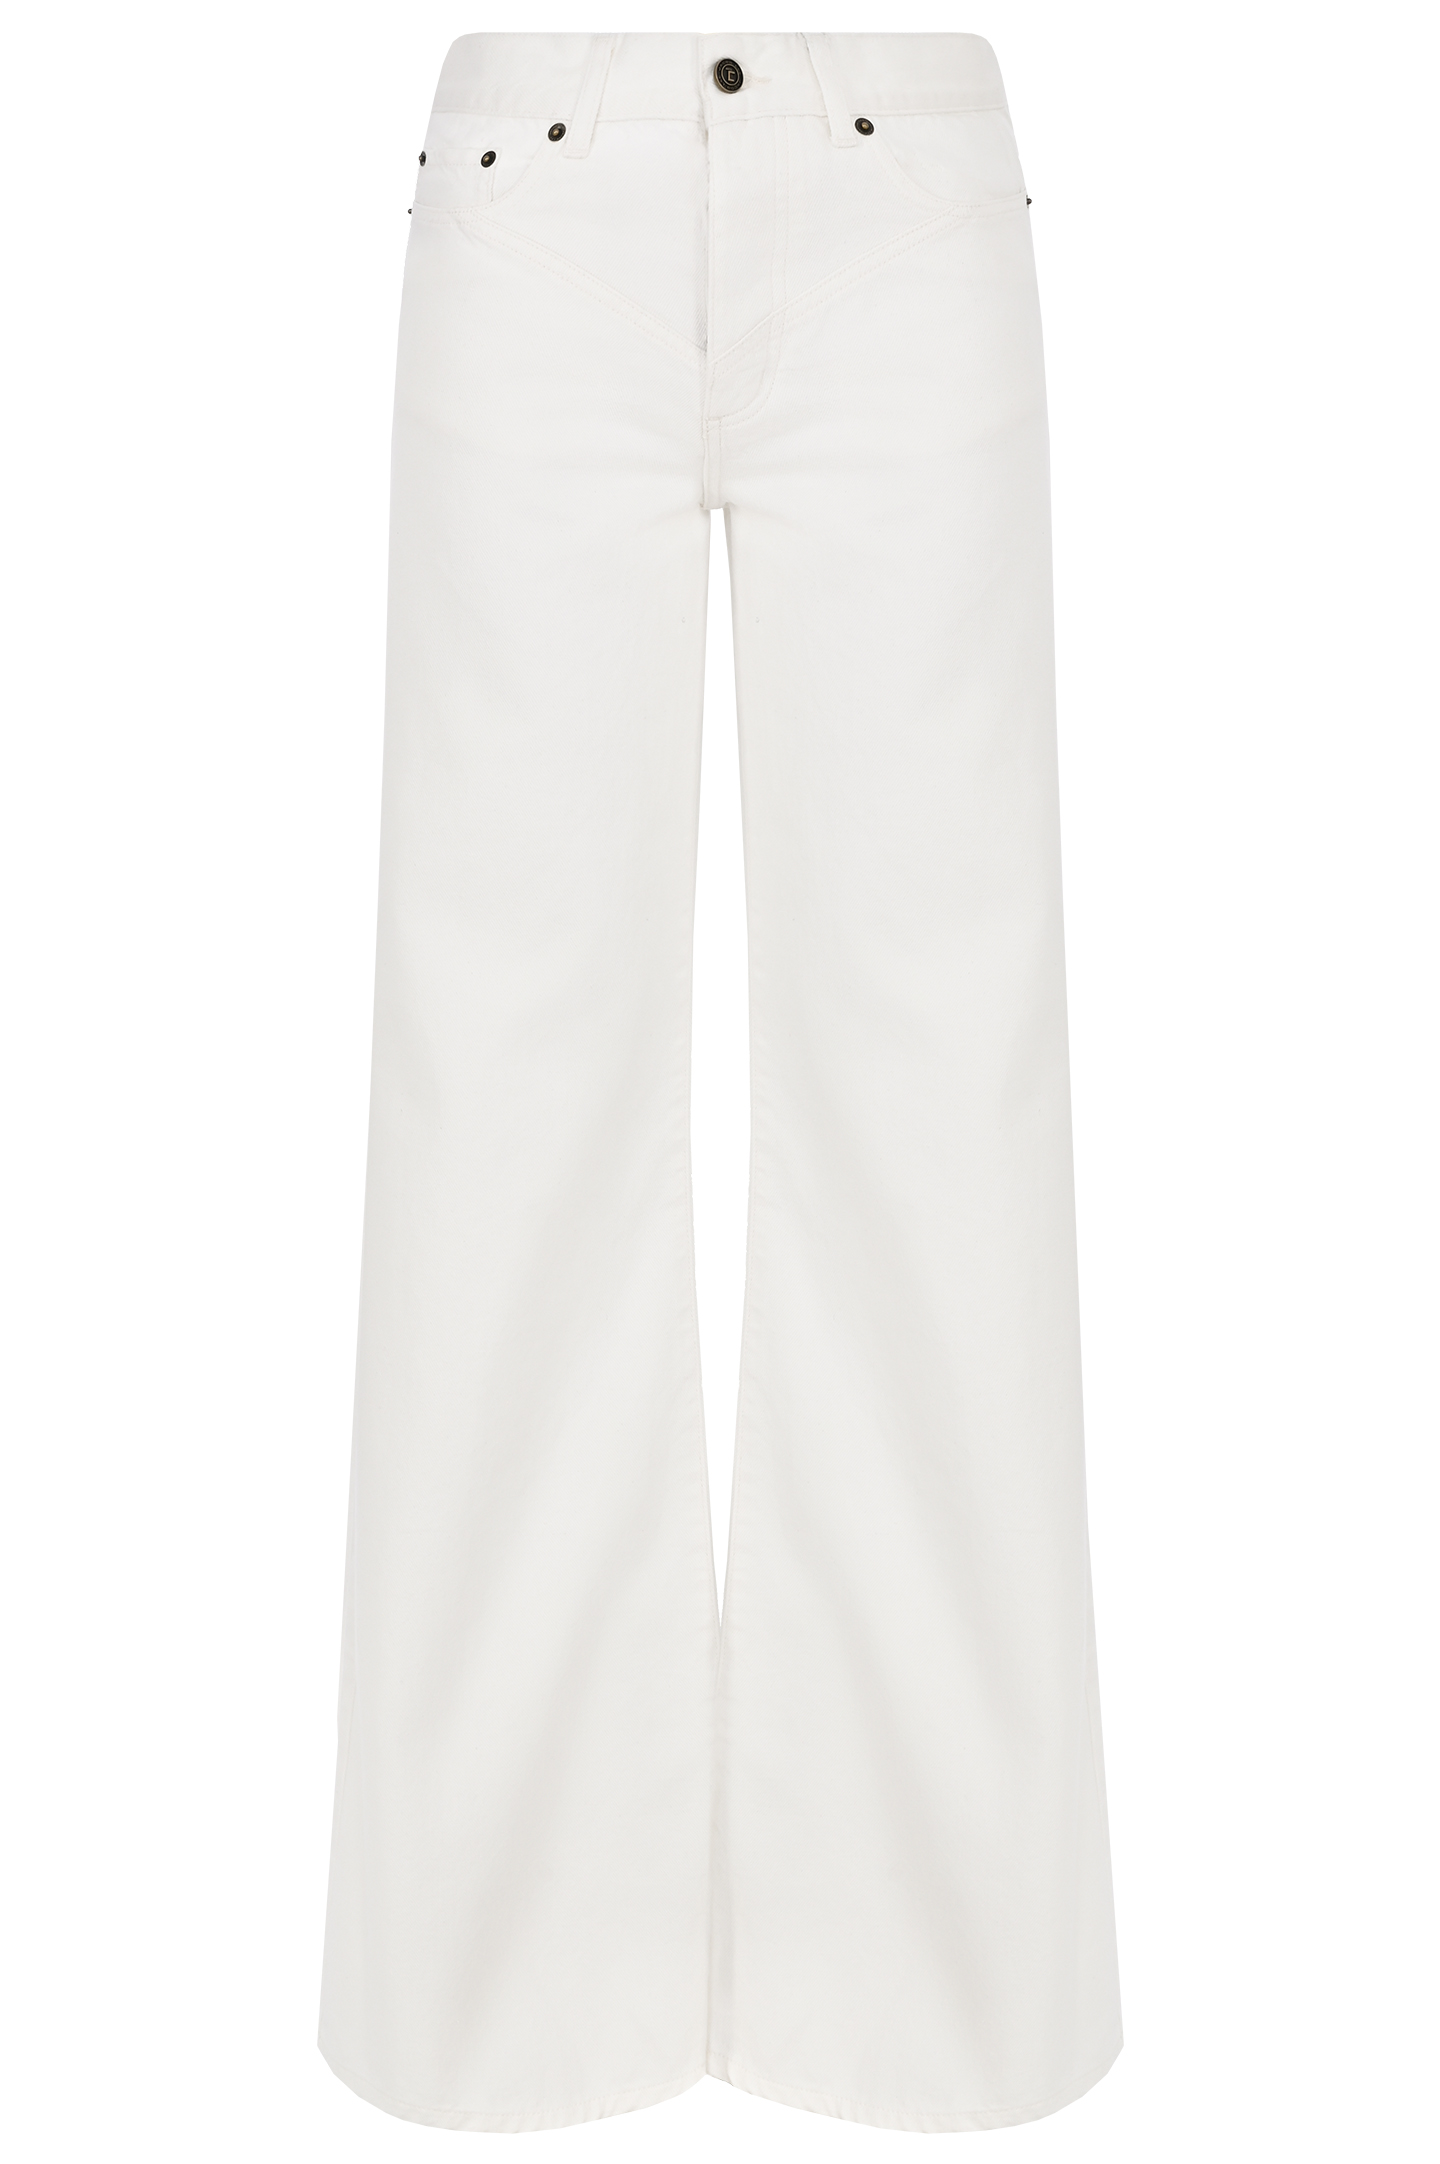 Широкие джинсы JACOB LEE WJP086SS, цвет: Белый, Женский